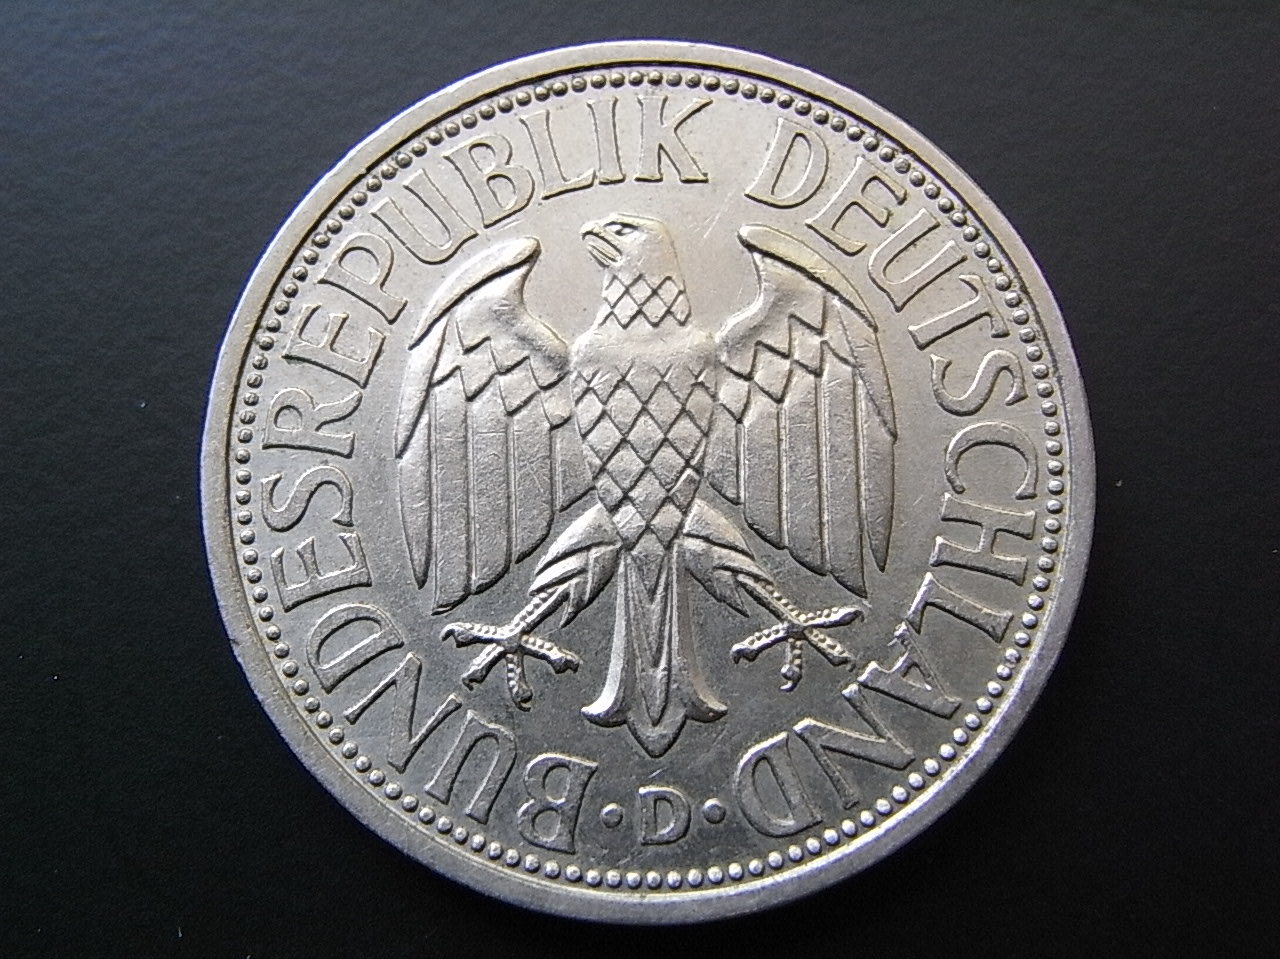 Deutsche mark. Монета 2 Deutsche Mark 1990. Дойч марки 1990. Немецкие Дойч марки. Марка дотч.